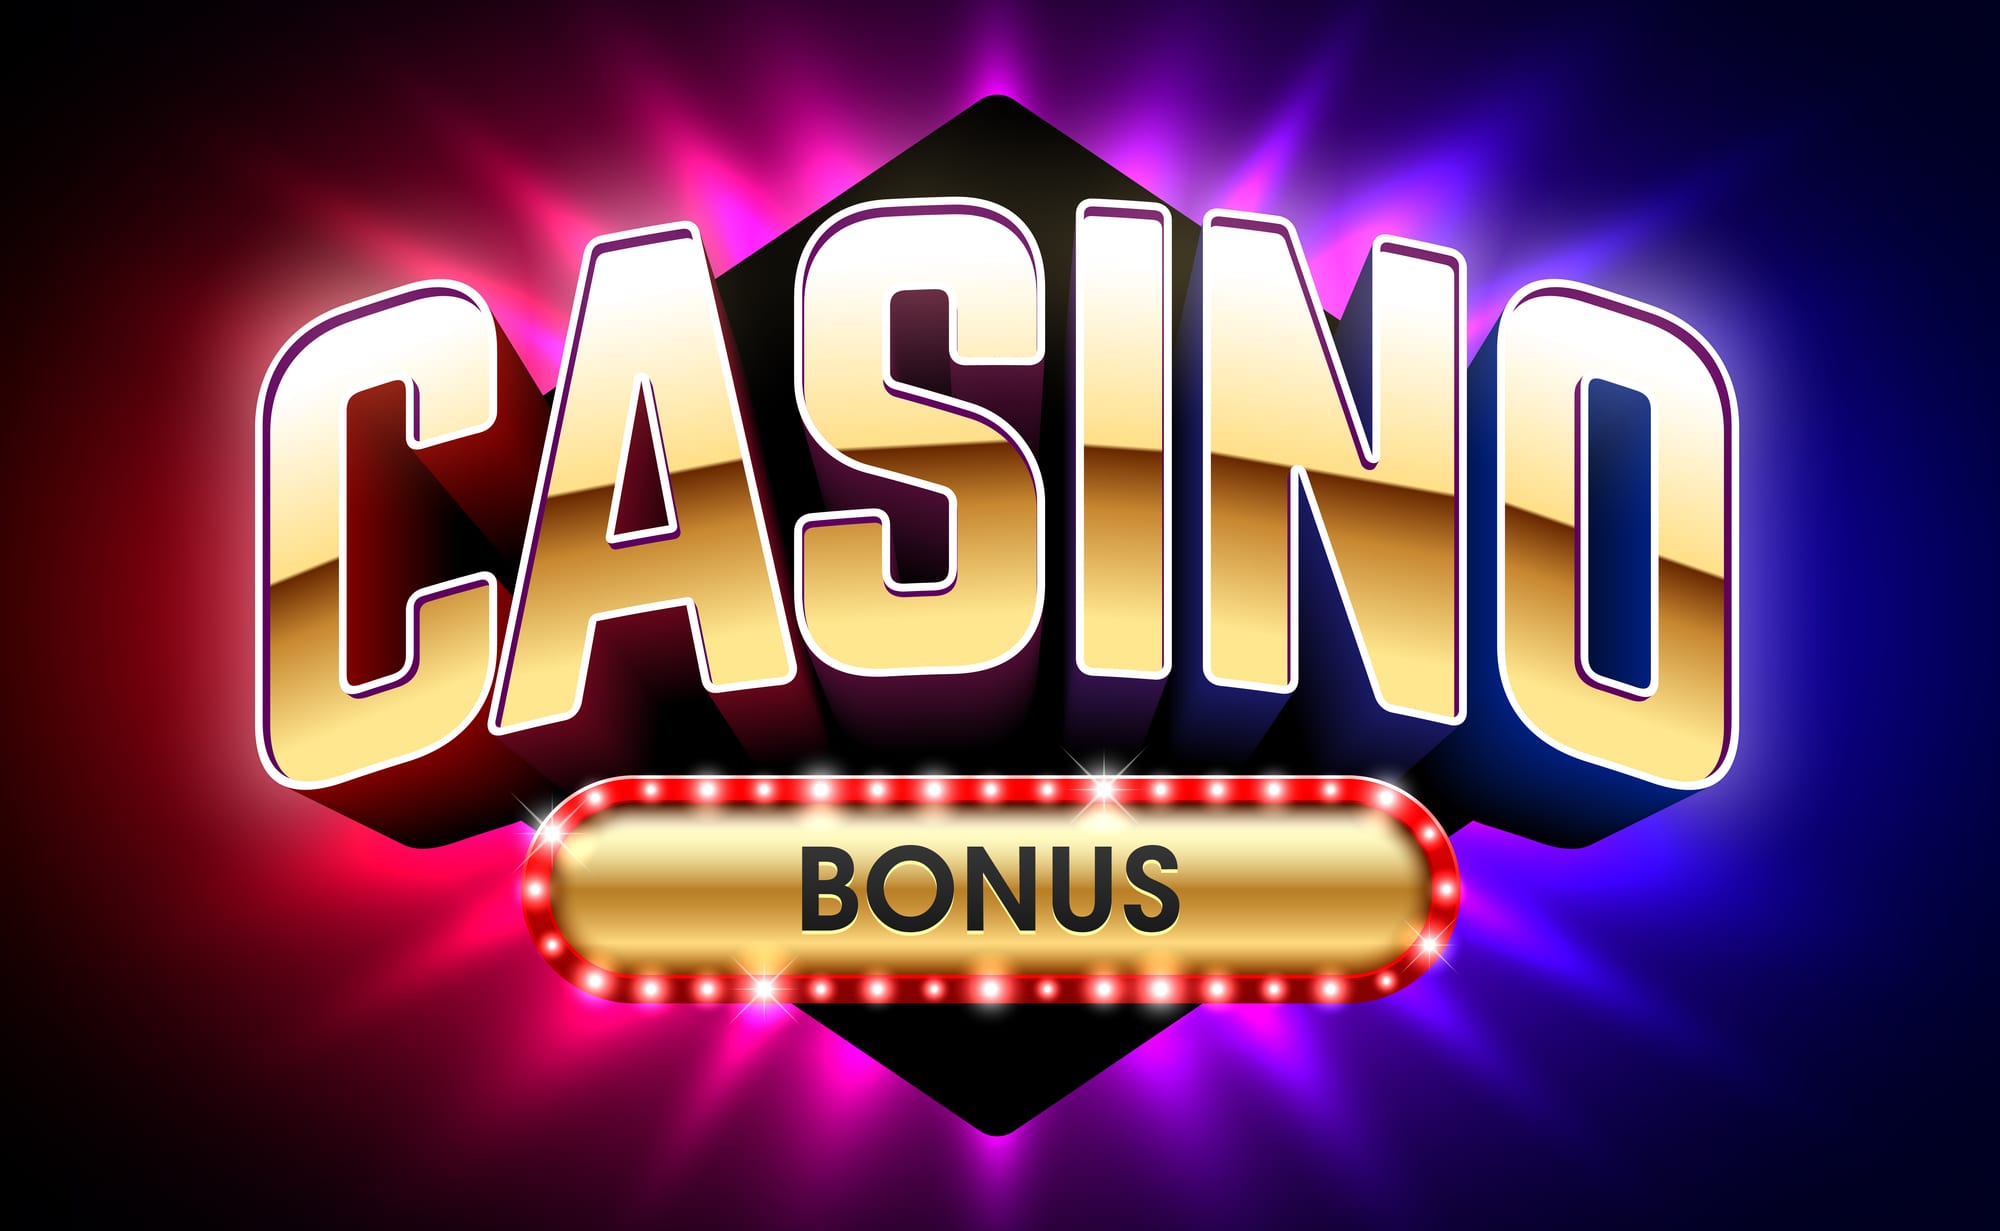 Buzzluck casino no deposit bonus codes august